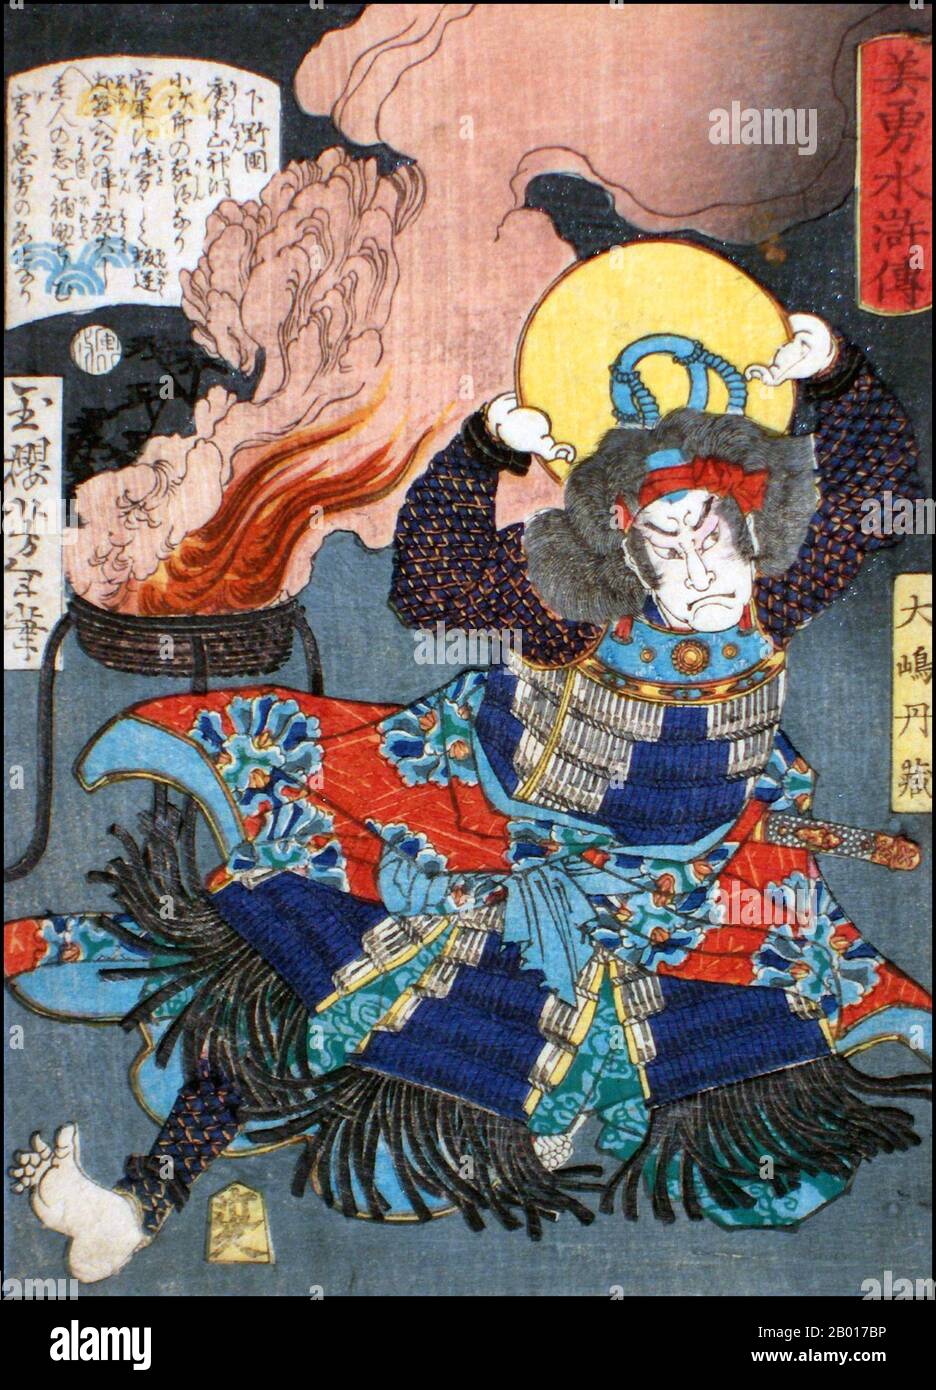 Japon: 'Le Bandit Chieftain Oshima Tanzo'.Imprimé Ukiyo-e de la série 'Heroes of the Water Margin' de Tsukioka Yoshitoshi (1839 - 9 juin 1892), 1866.Tsukioka Yoshitoshi, également appelé Tiso Yoshitoshi, était un artiste japonais.Il est largement reconnu comme le dernier grand maître d'Ukiyo-e, un type d'impression de blocs de bois japonais.Il est également considéré comme l'un des plus grands innovateurs de la forme.Sa carrière s'est étendue à deux époques : les dernières années du Japon féodal et les premières années du Japon moderne après la restauration de Meiji. Banque D'Images